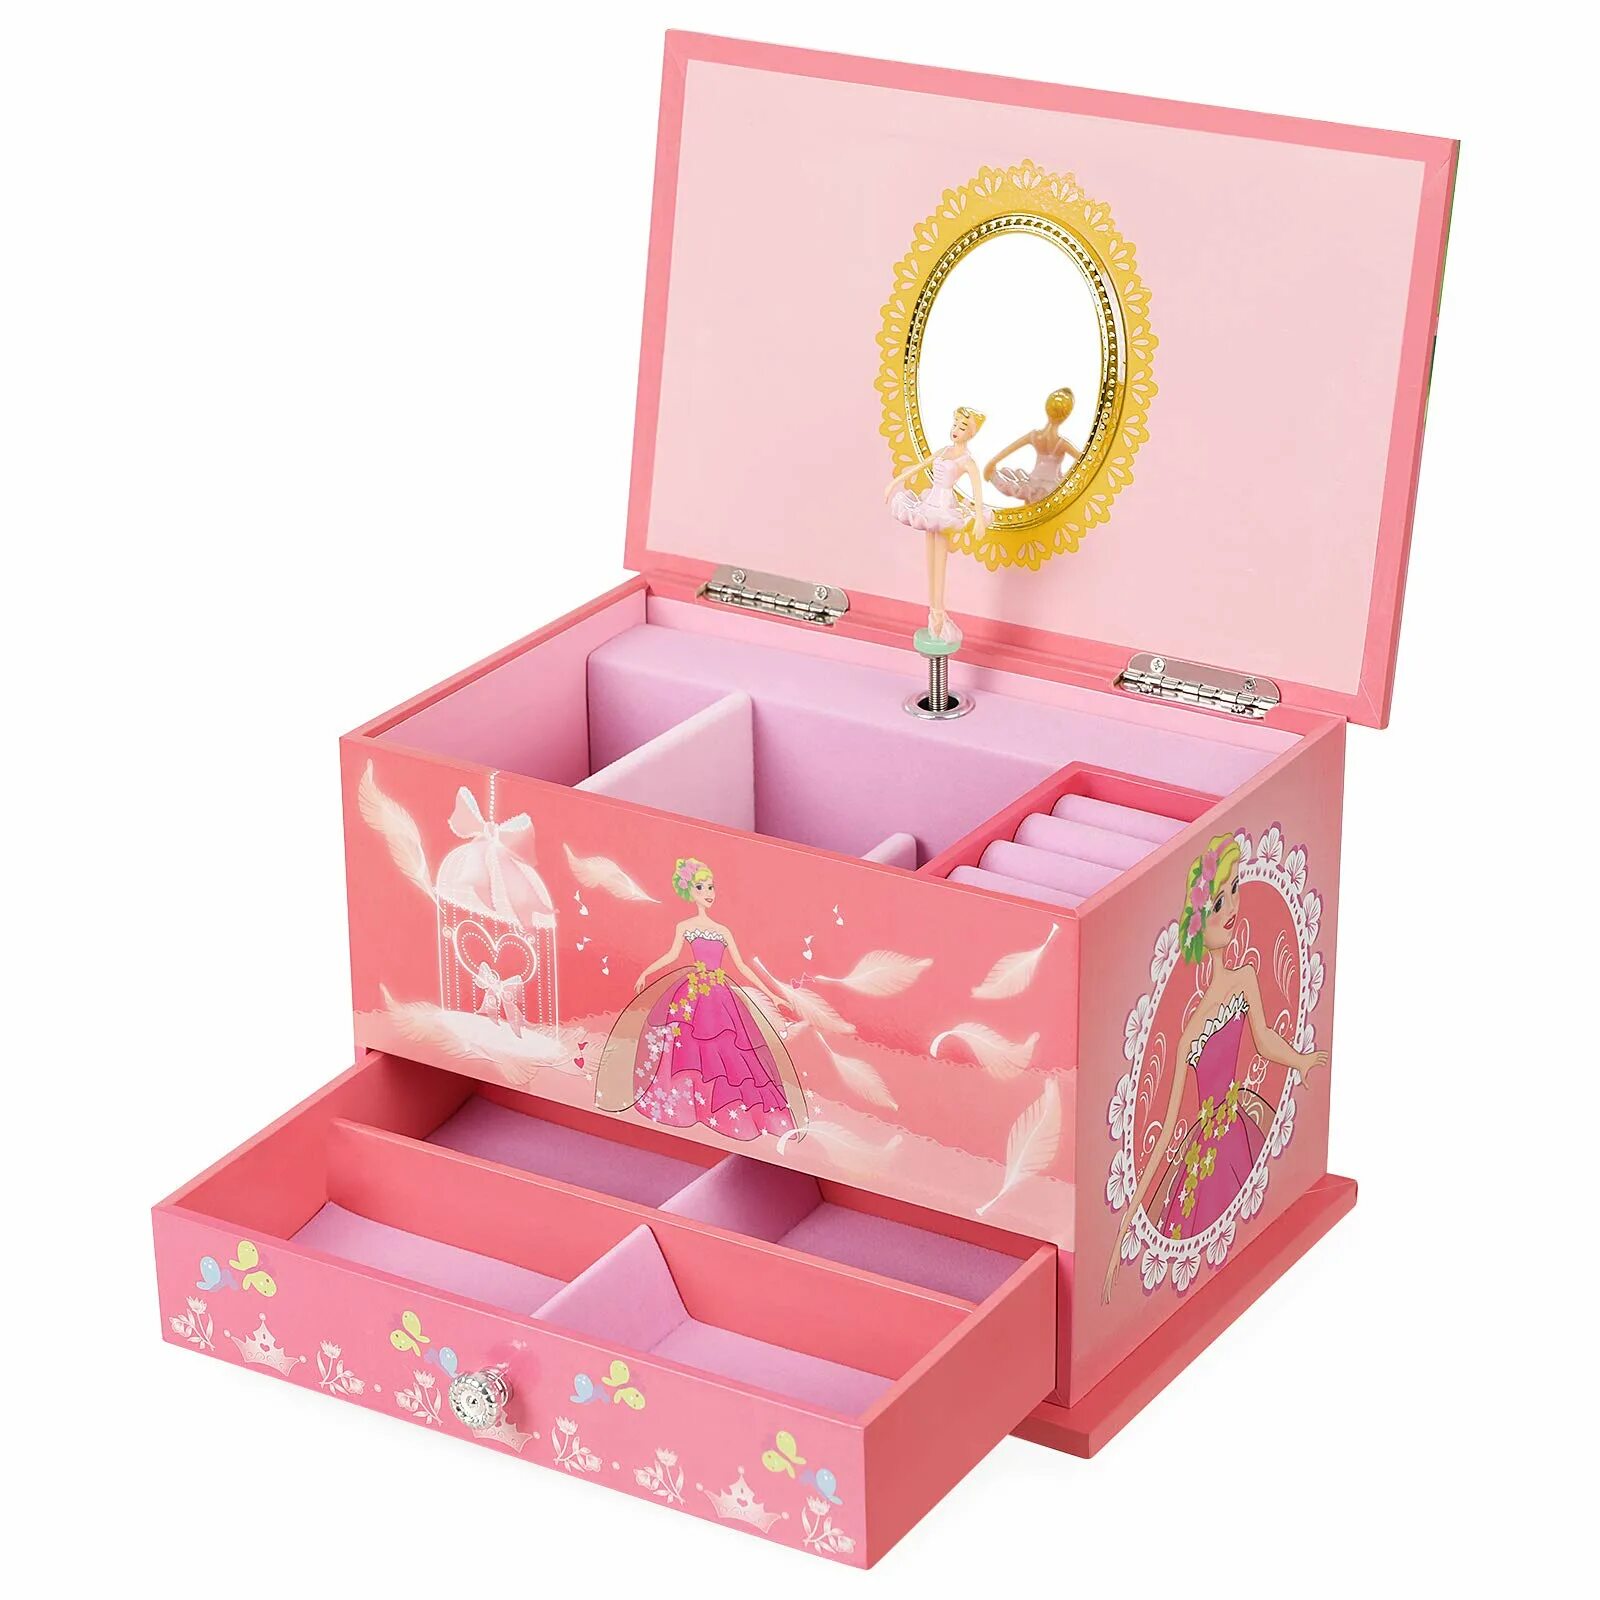 Музыкальная шкатулка сундучок Musical jewerly Box Shenzhen Toys д54155. Подарок для девочки. Подарок девочке на 7 лет. Подарок на новый год девочке. Подарки на др 9 лет